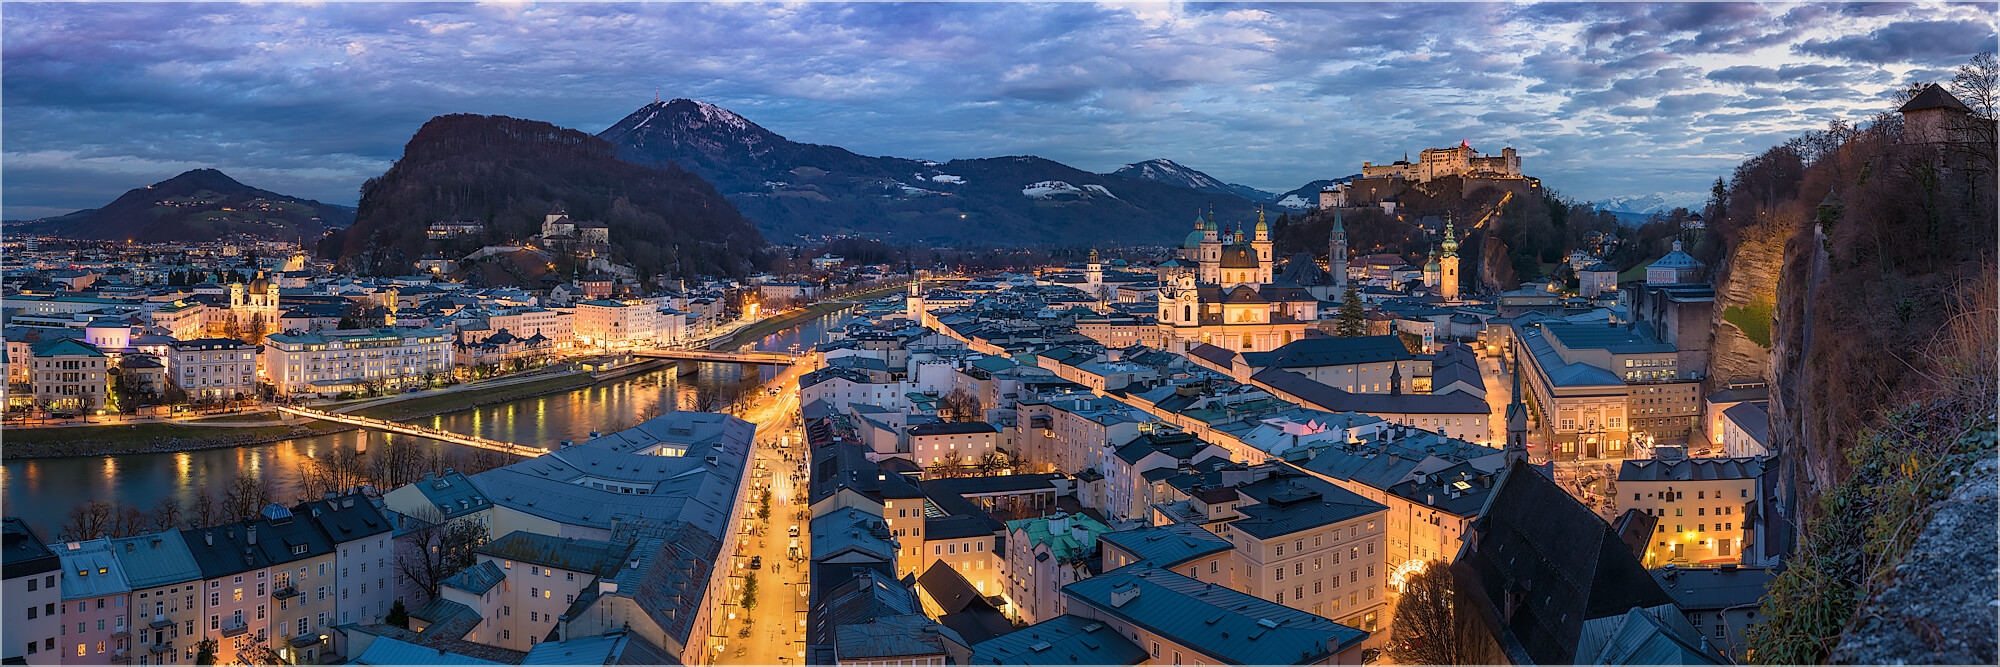 Panoramafoto über den Dächern von Salzburg